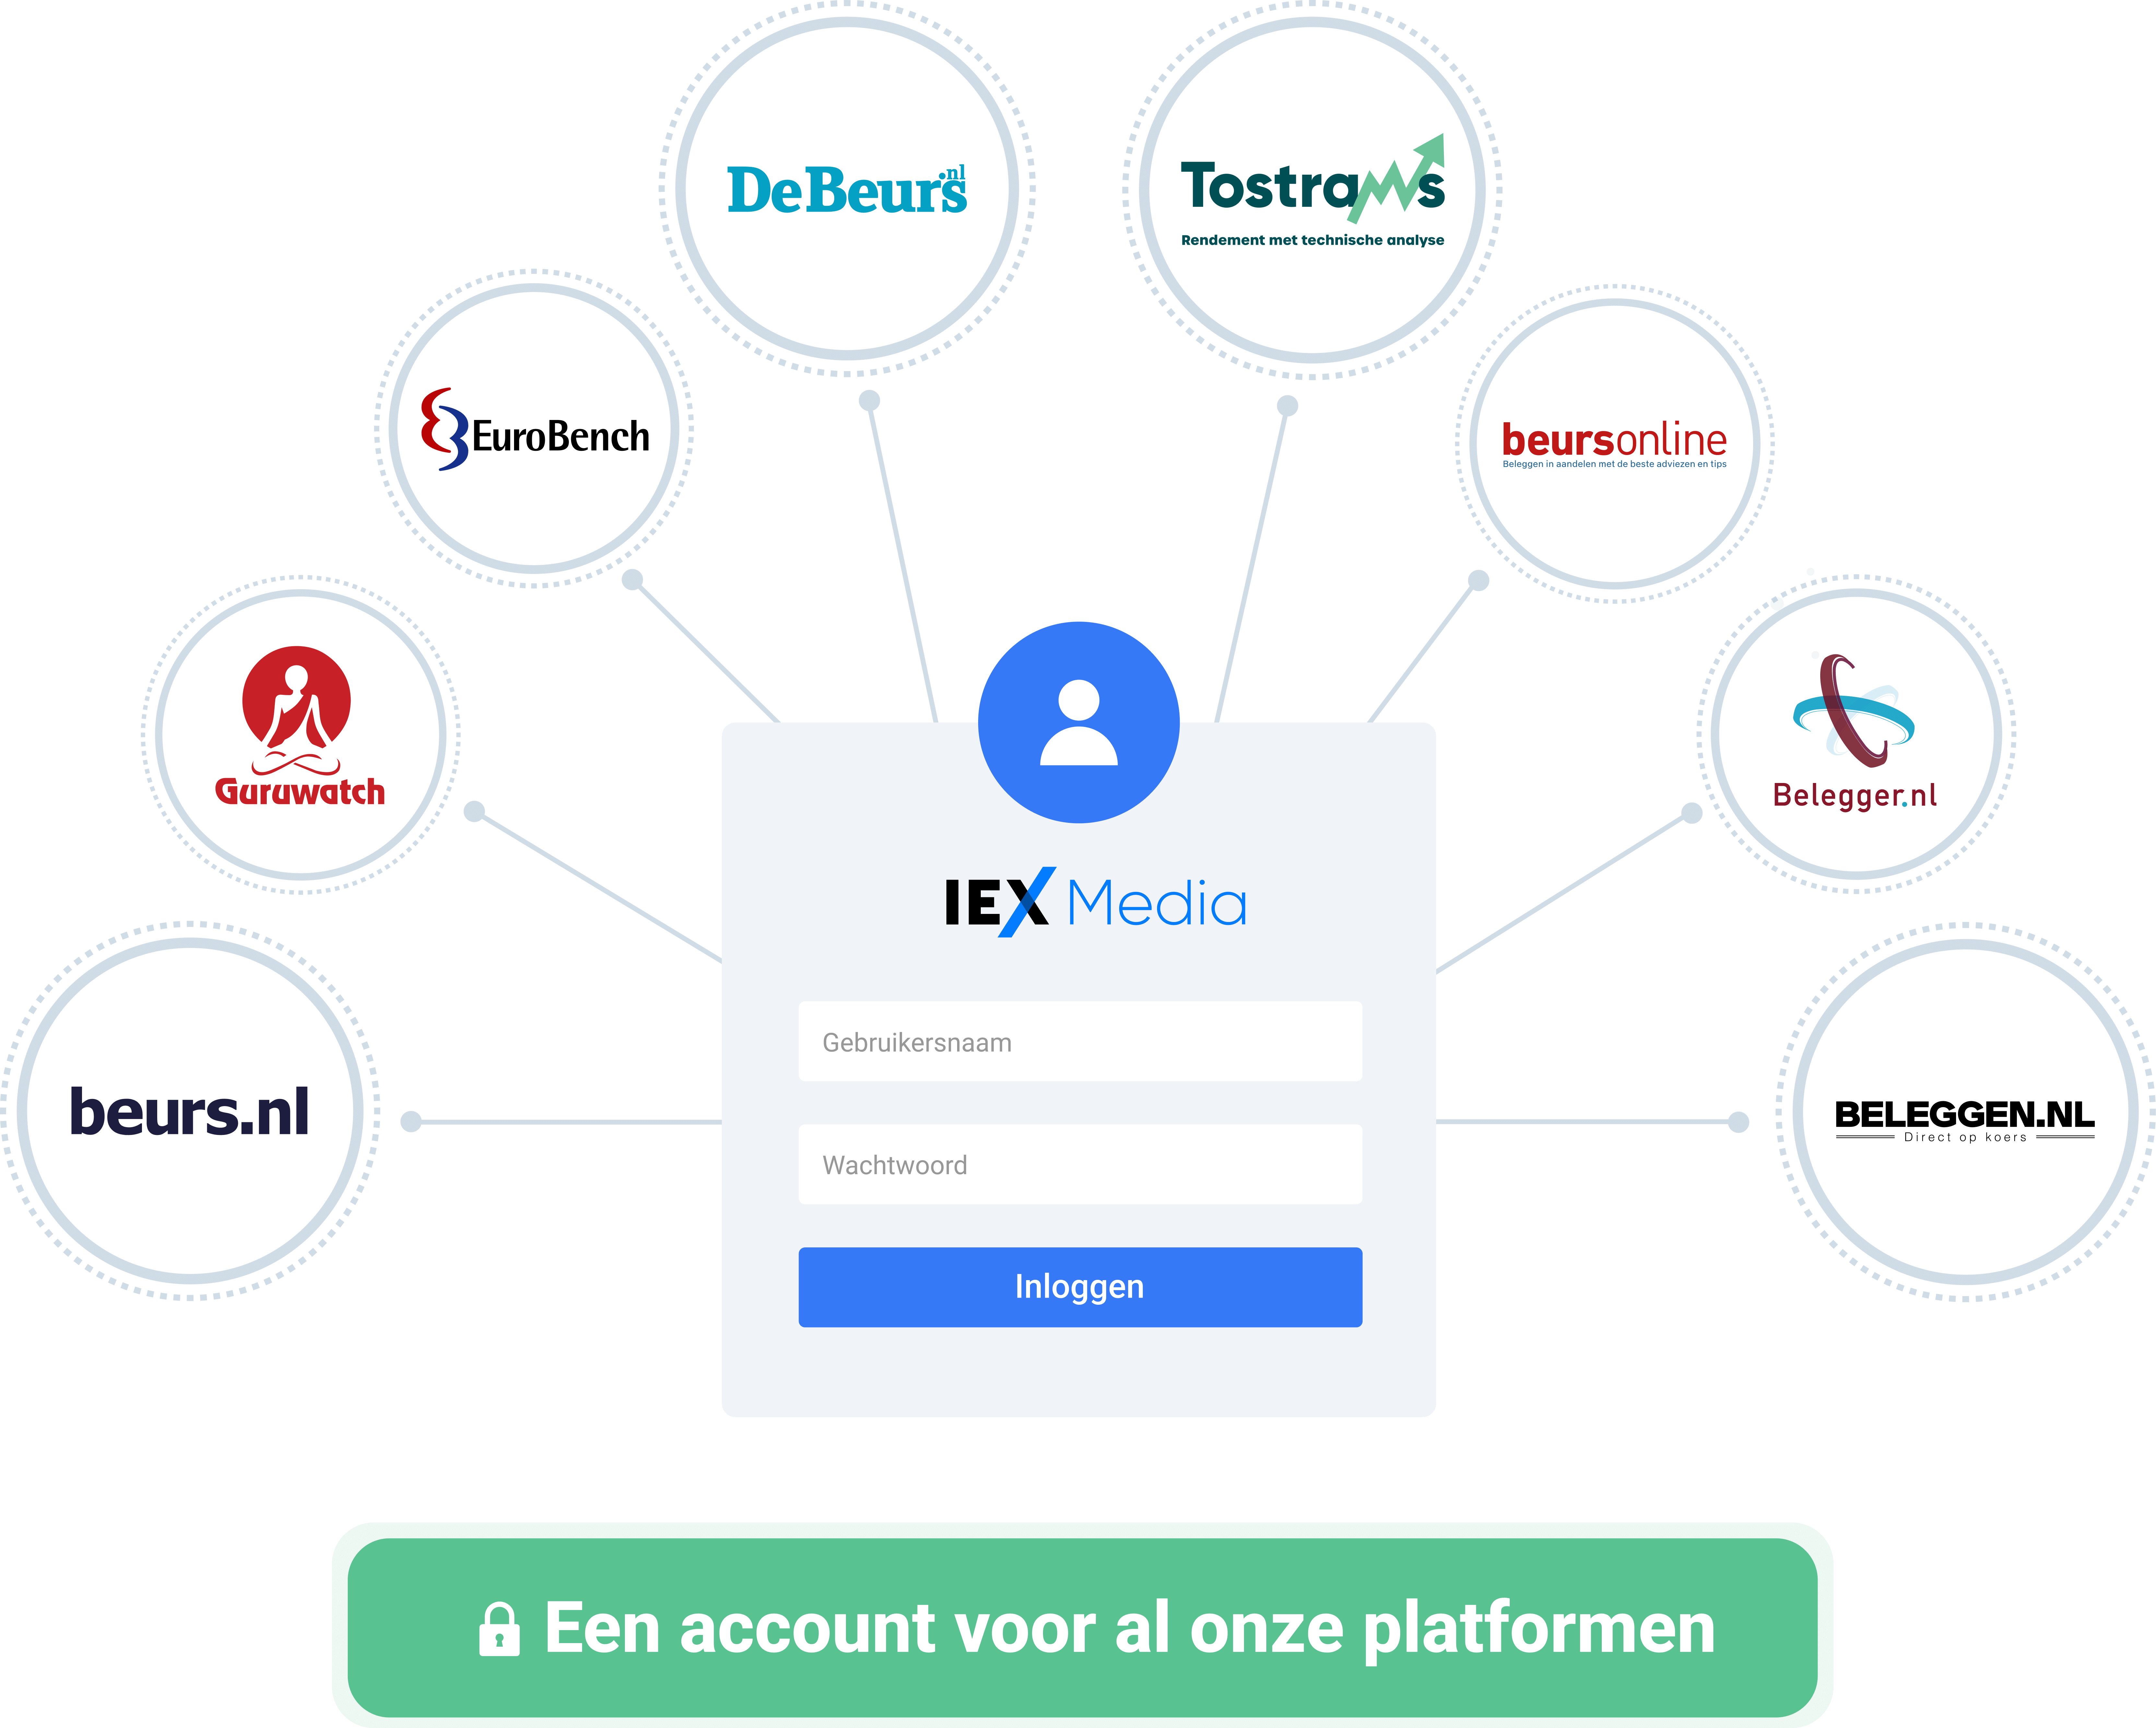 IEX Media login blok met pijlen eromheen die wijzen naar: beurs.nl, Guruwatch, EuroBench, deBeurs.nl, Tostrams, BeursOnline, Belegger.nl, Beleggen.nl